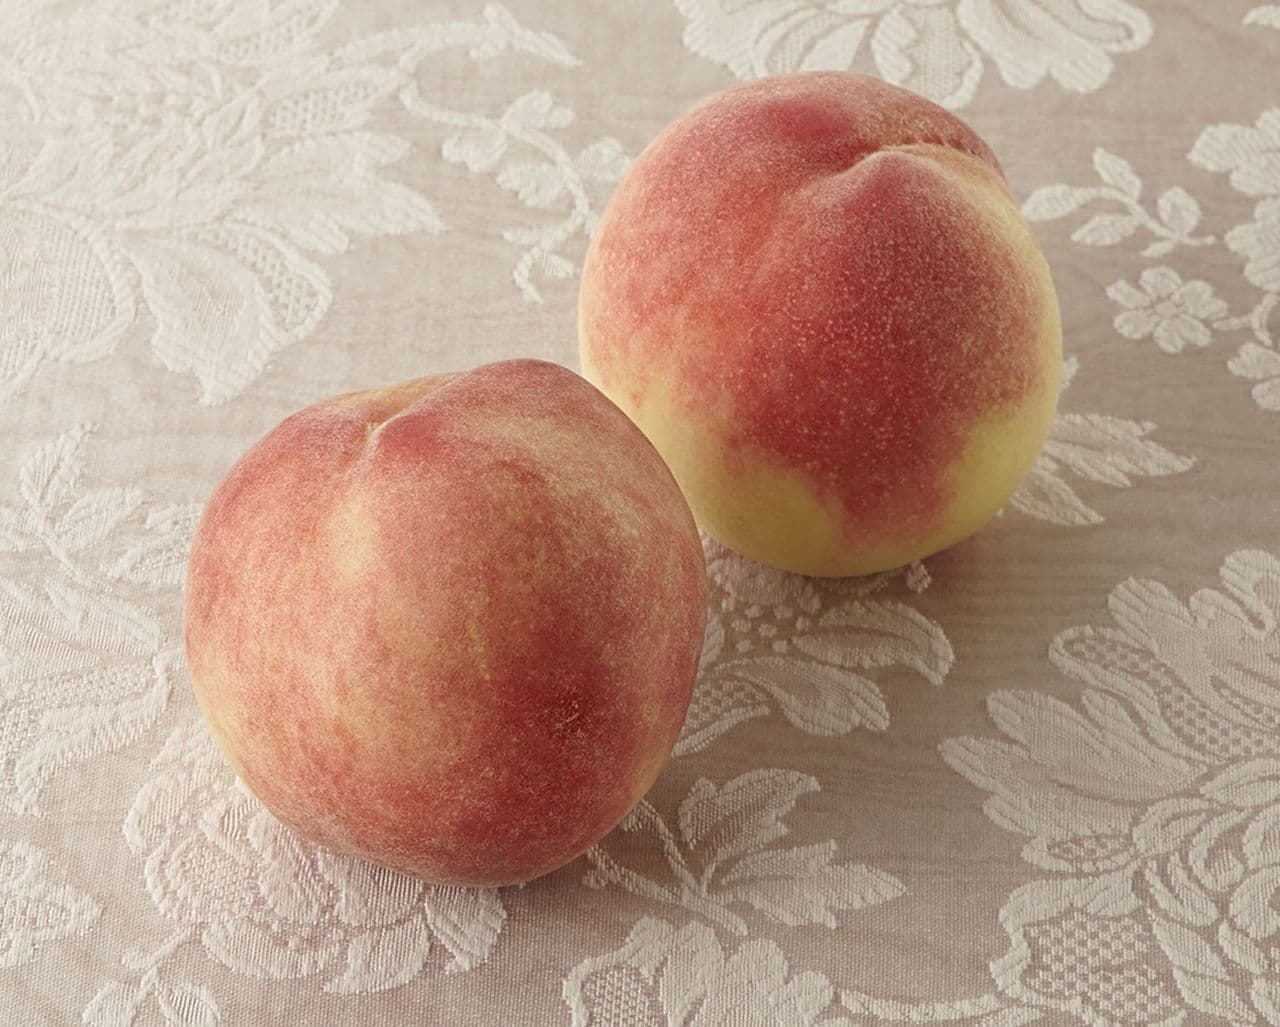 Peaches used in Denny's Peach Dessert